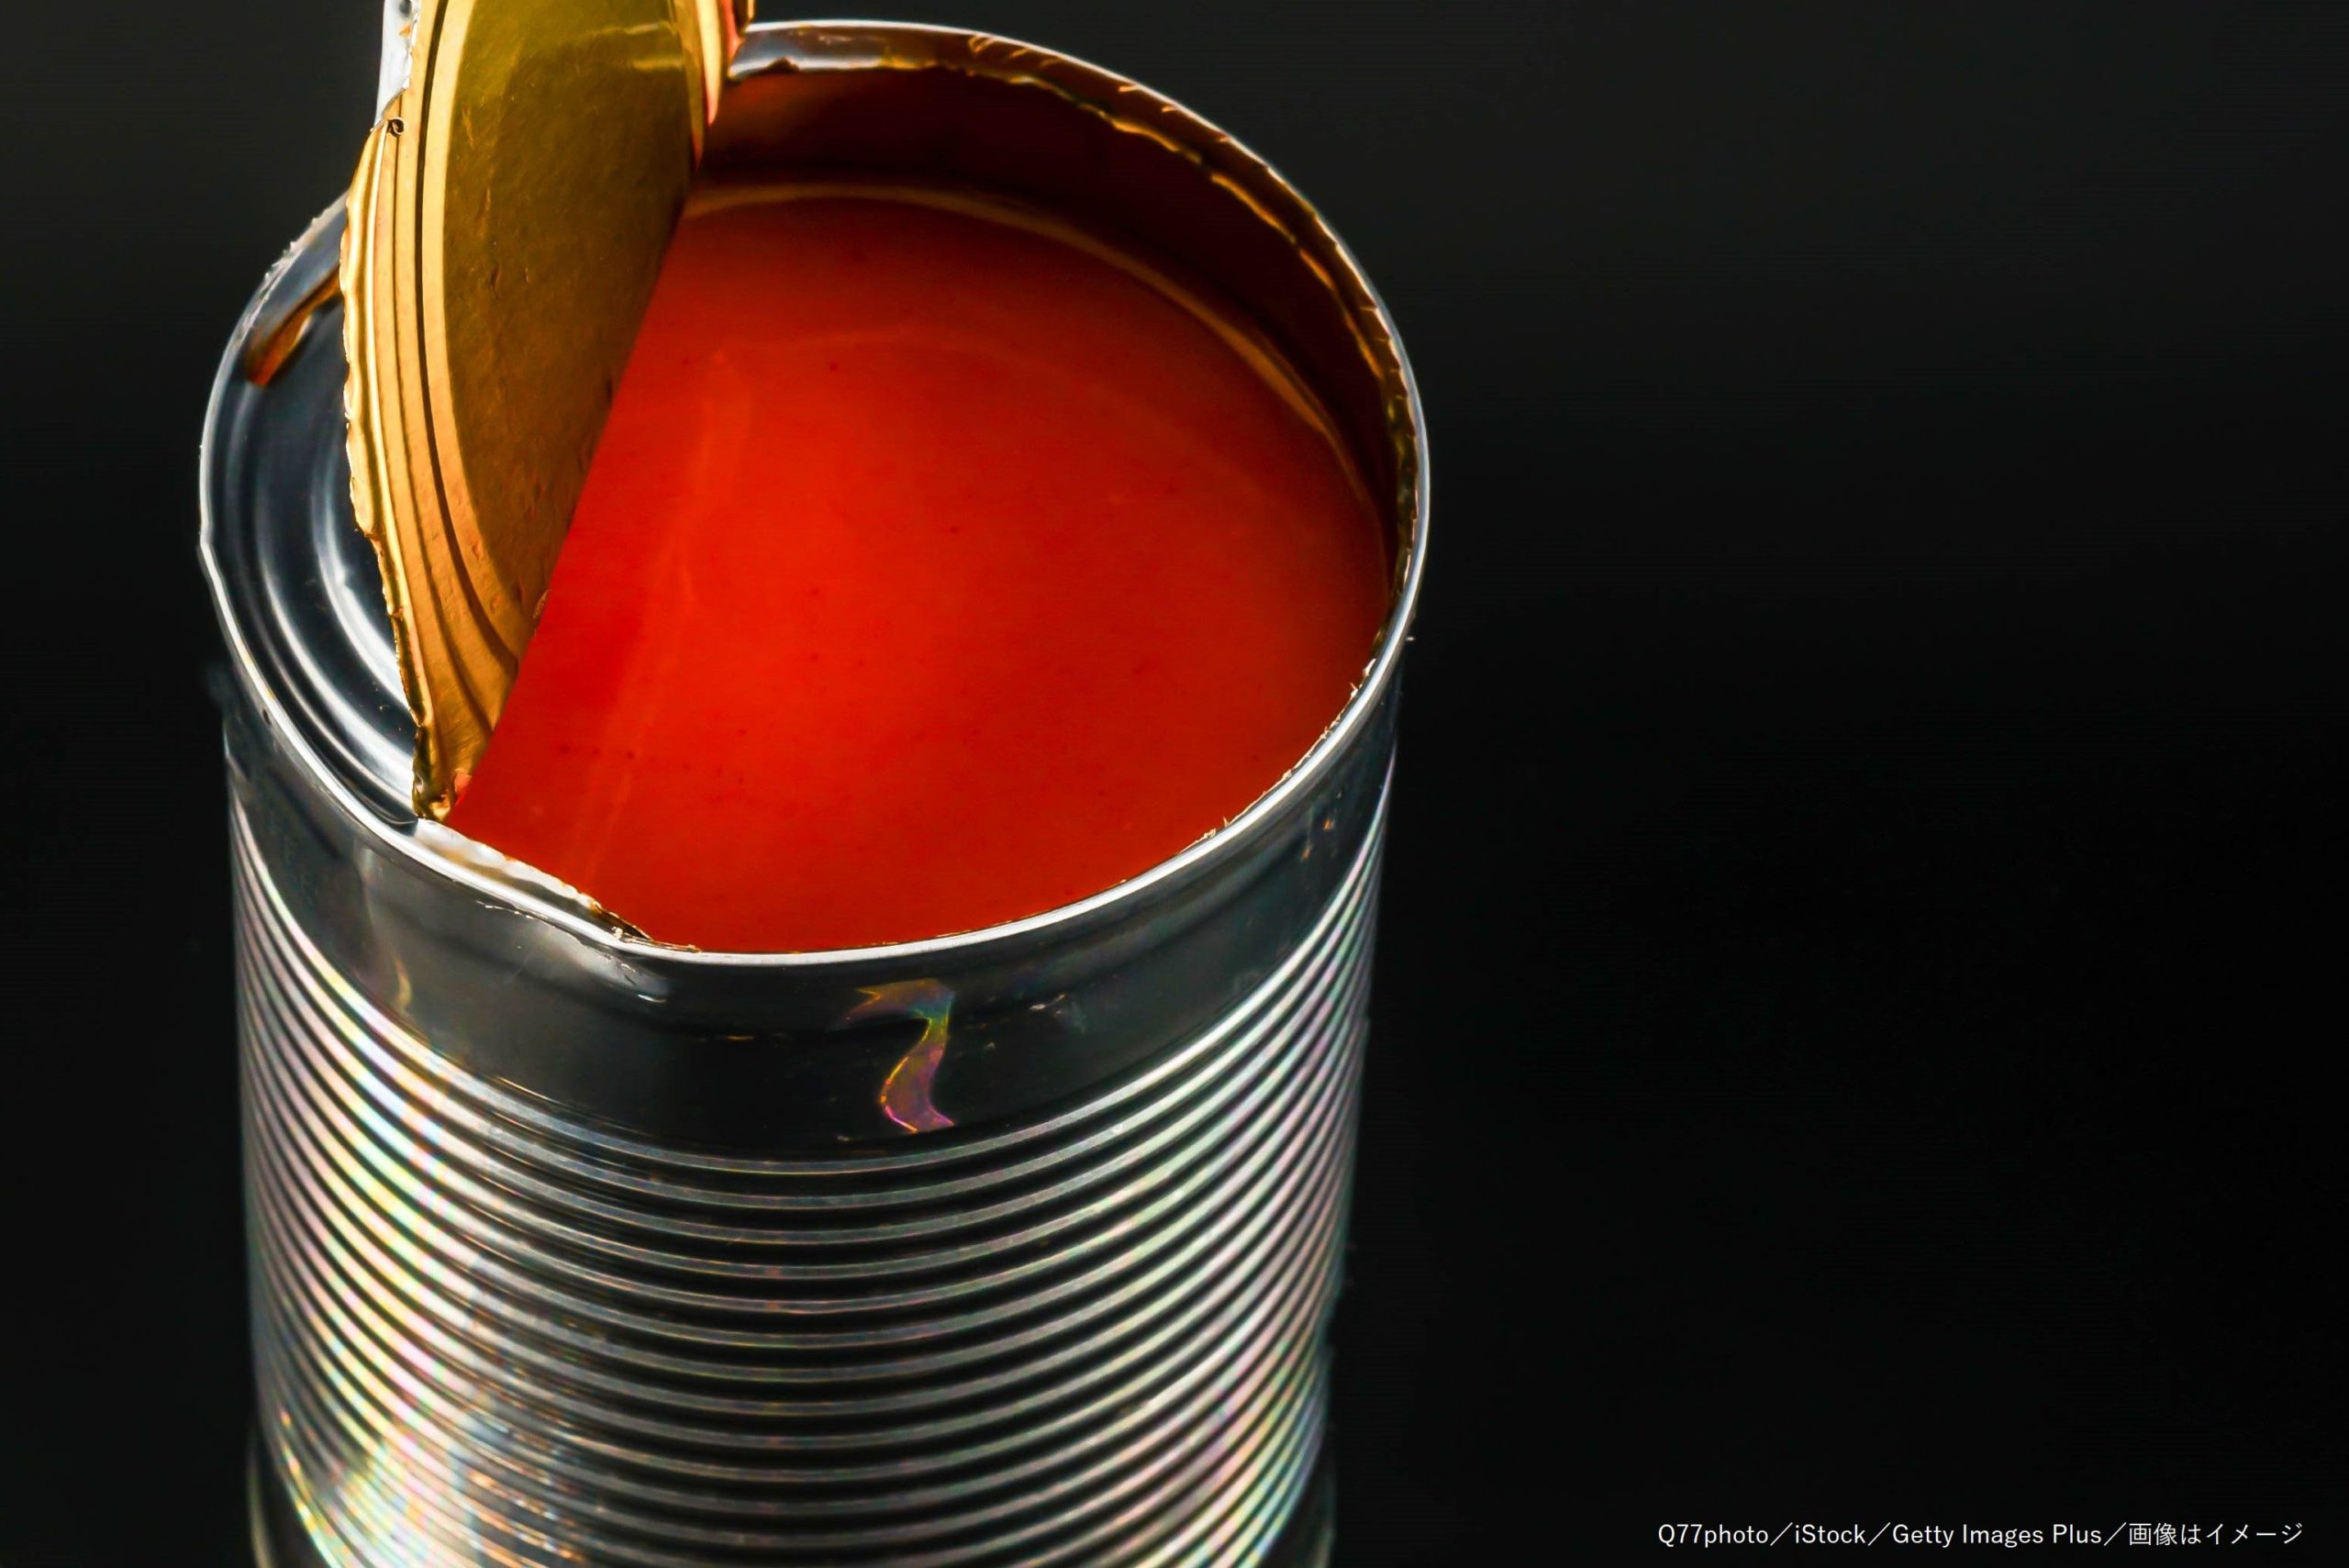 ゴッホの『ひまわり』にトマトスープを浴びせ抗議 「芸術と命